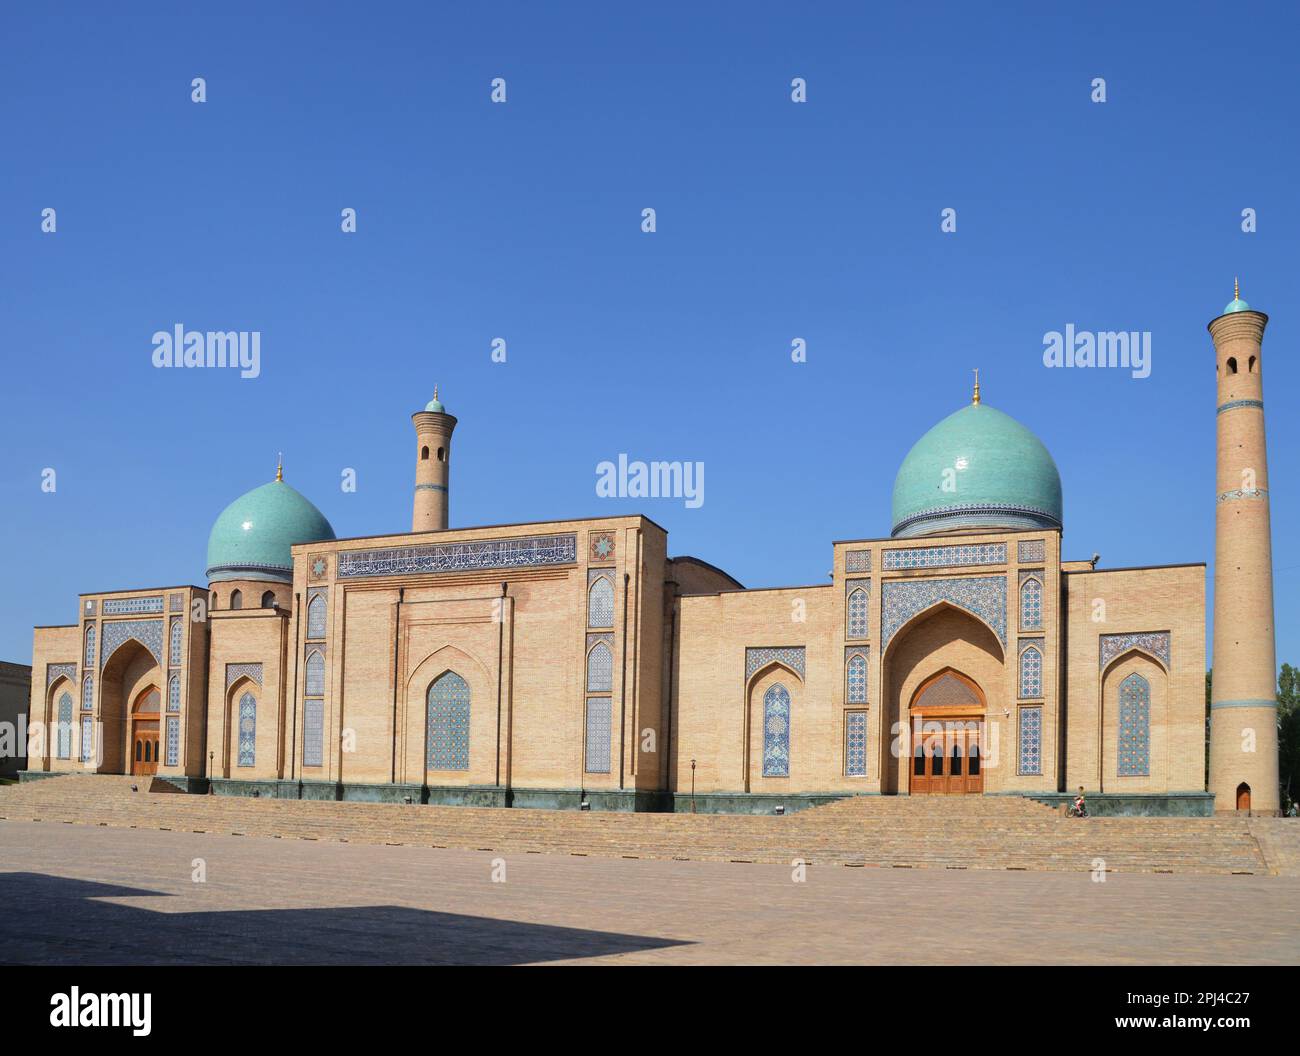 Ouzbékistan, Tachkent, capitale, complexe Khast-Imam: Mosquée Khazrati Imam, construite en 2007, de l'autre côté de la place Barak-Khan Madrasa. Banque D'Images